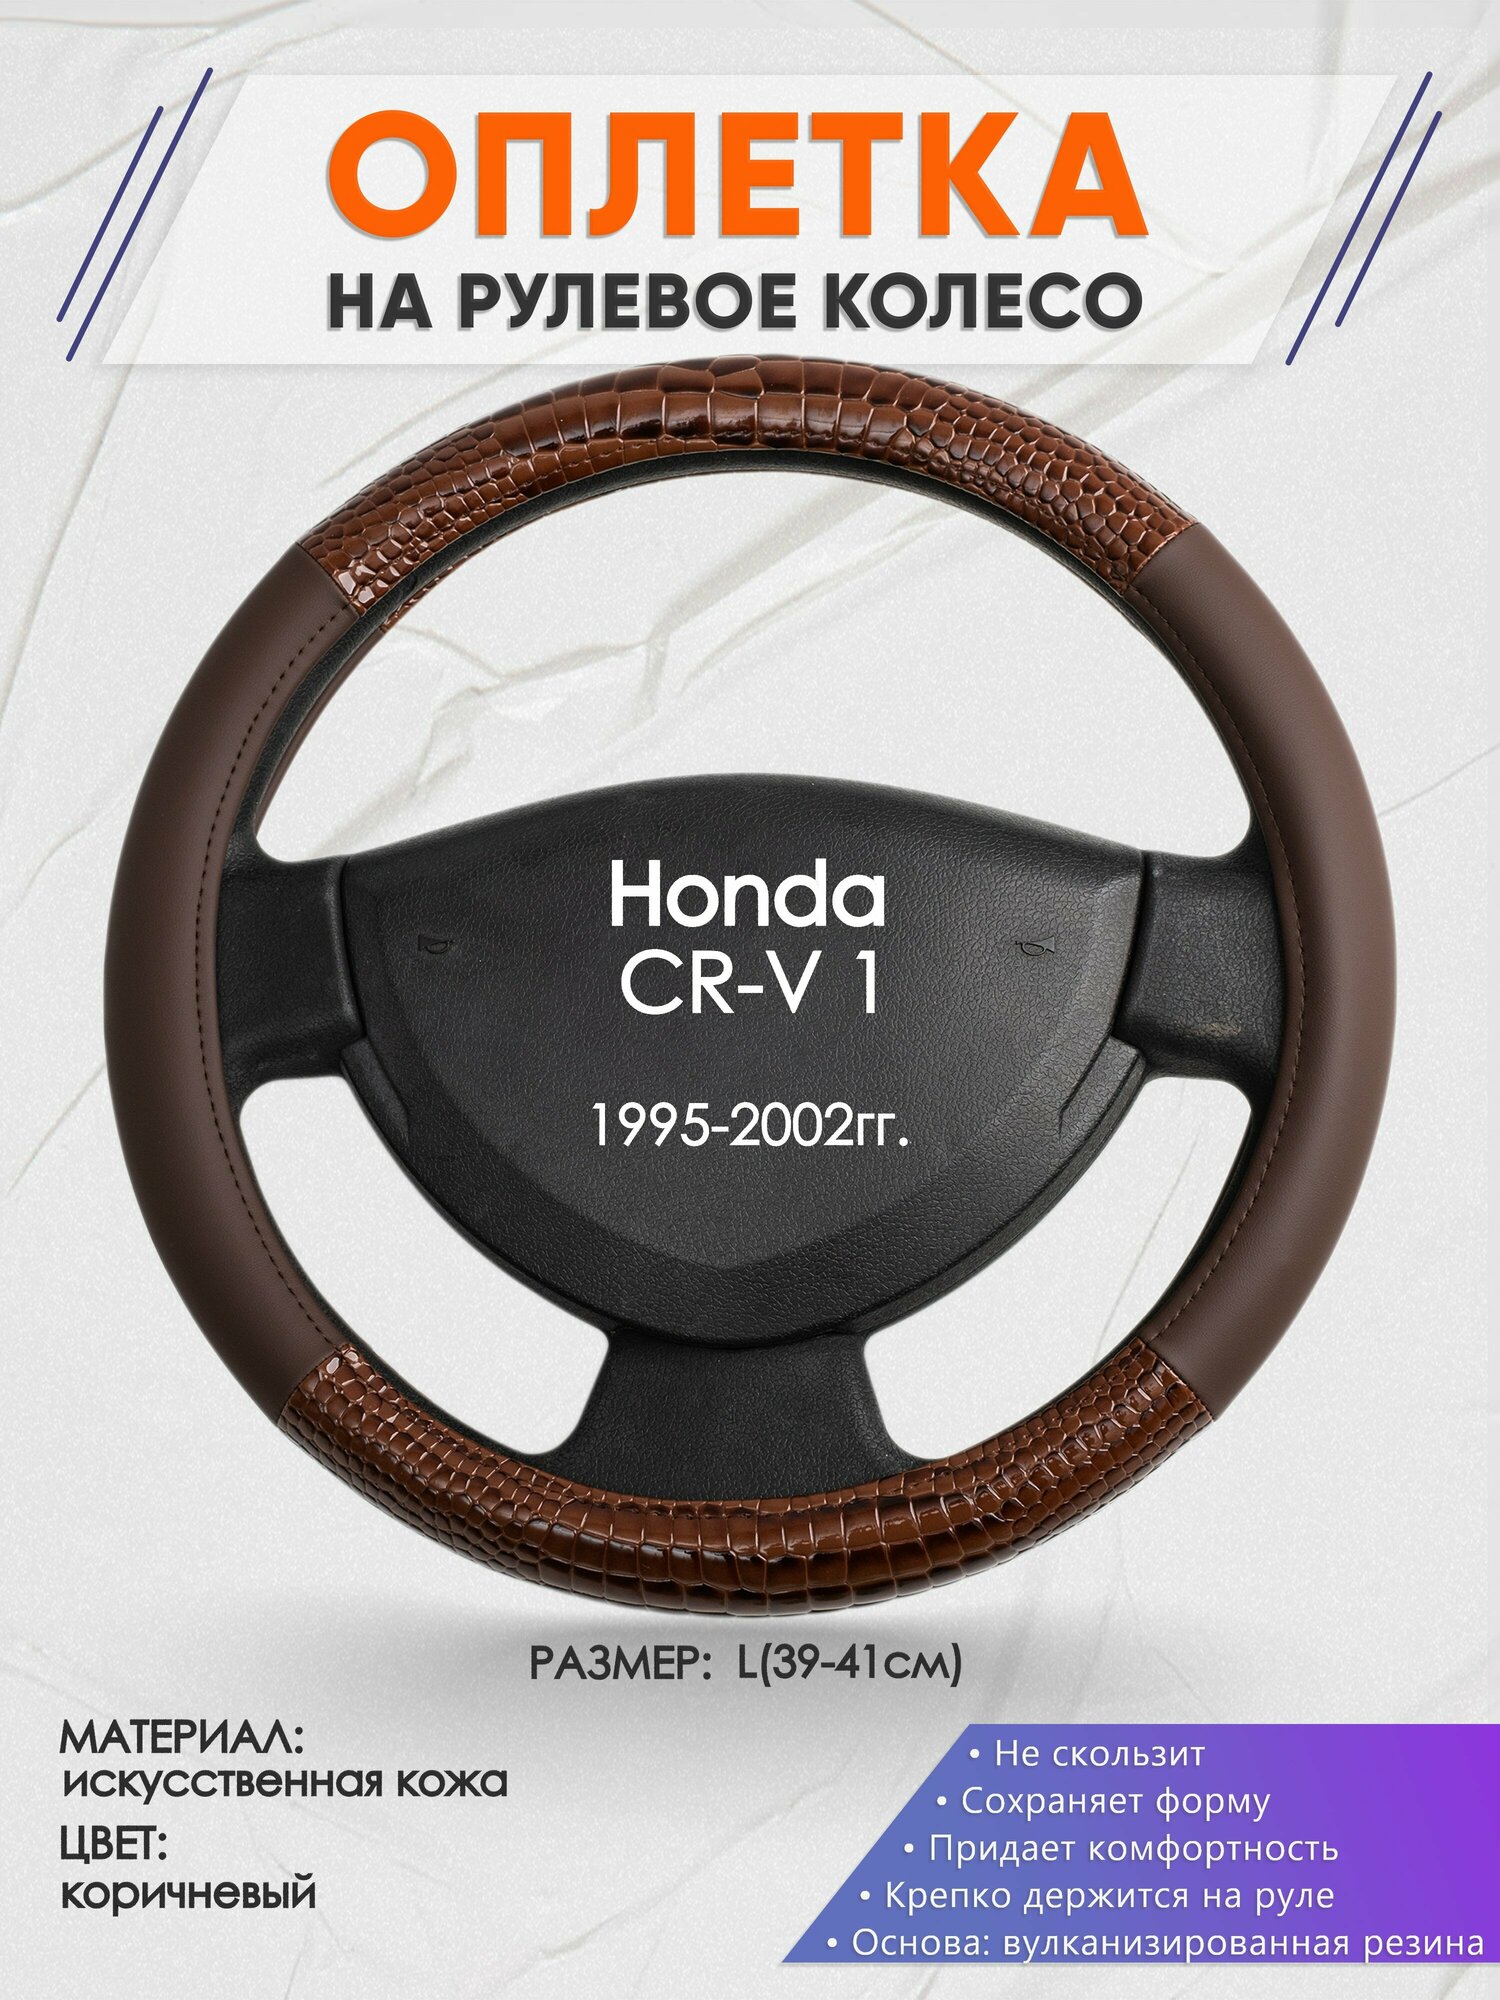 Оплетка на руль для Honda CR-V 1(Хонда срв 1) 1995-2002, L(39-41см), Искусственная кожа 85